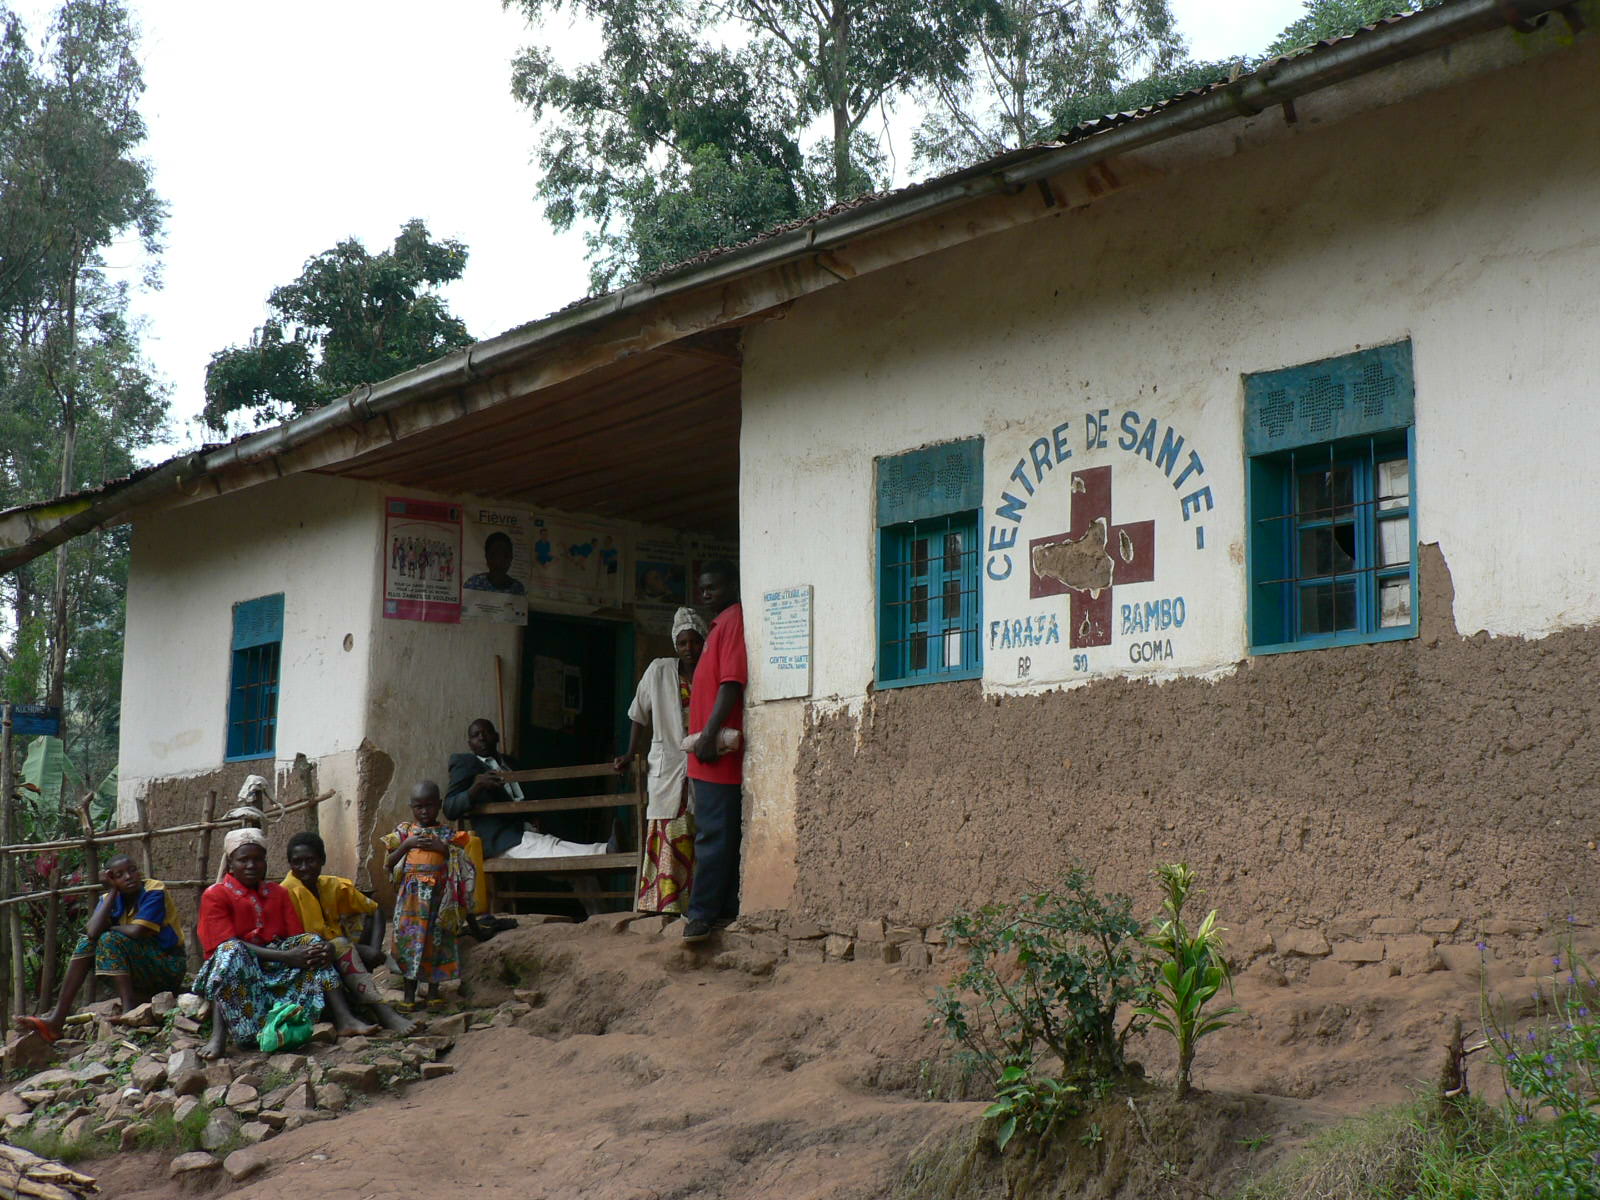 Health centre in the Democratic Republic of Congo